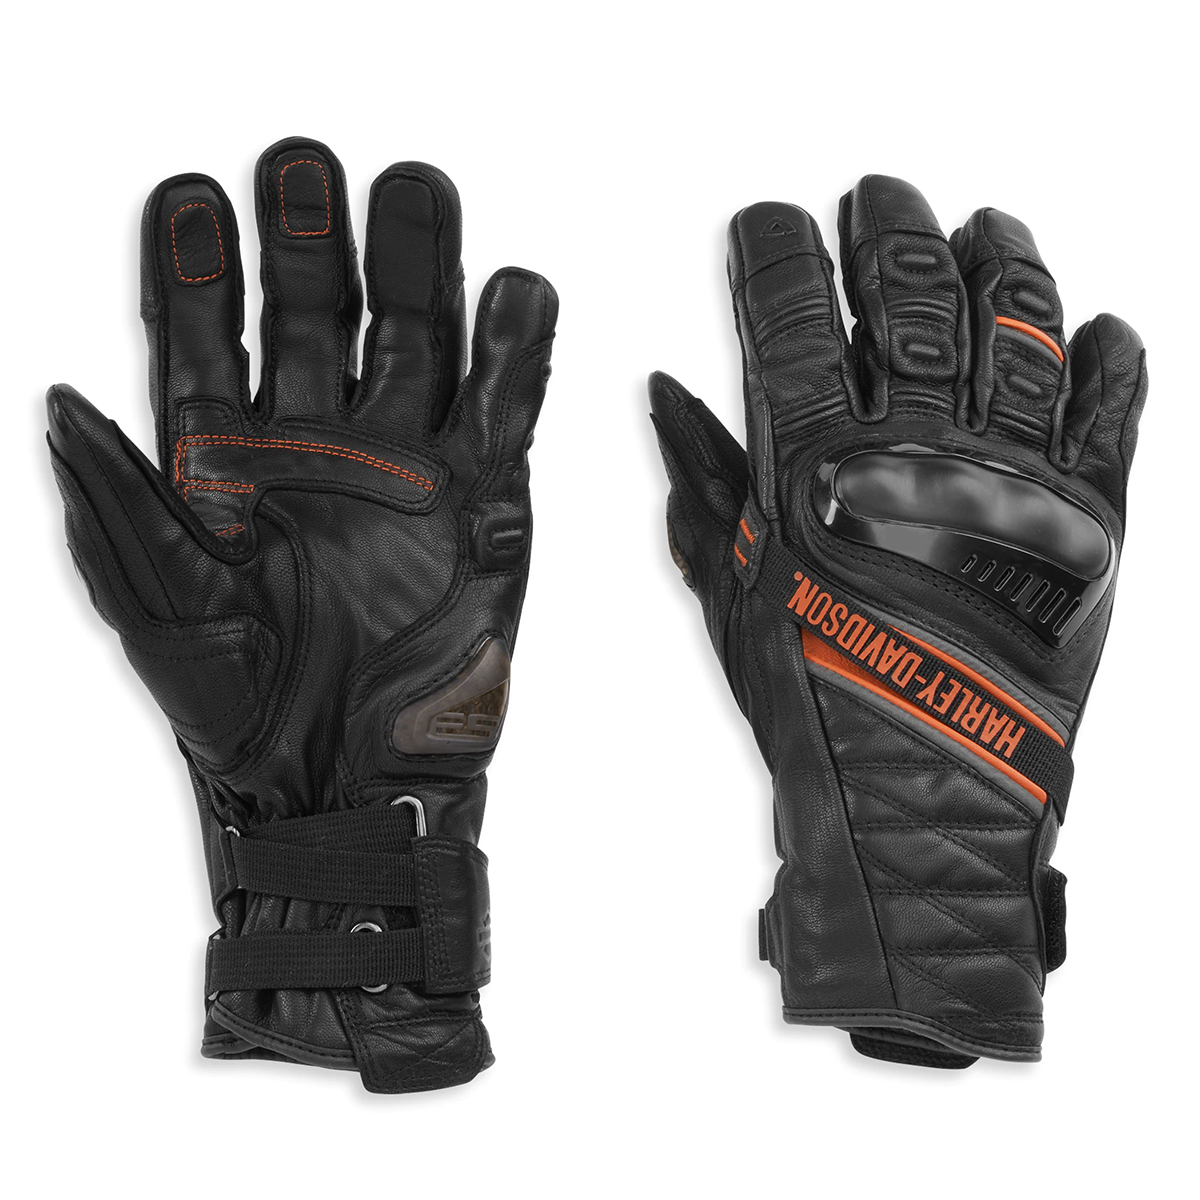 Harley-Davidson Passage Men's Adventure Gauntlet Gloves